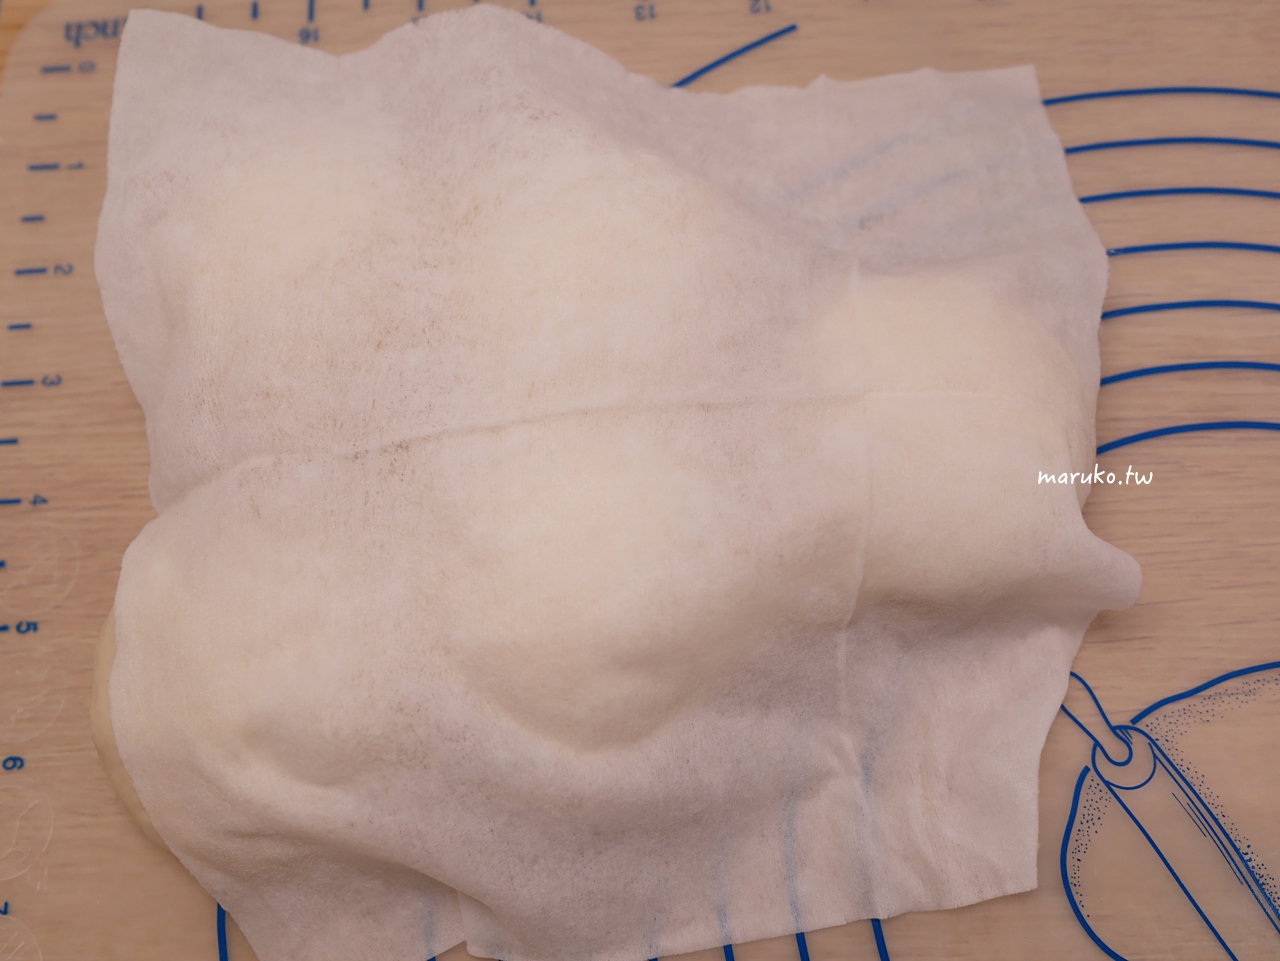 【食譜】熱狗麵包 不需要擀麵棍 簡單的造型熱狗麵包做法 @Maruko與美食有個約會